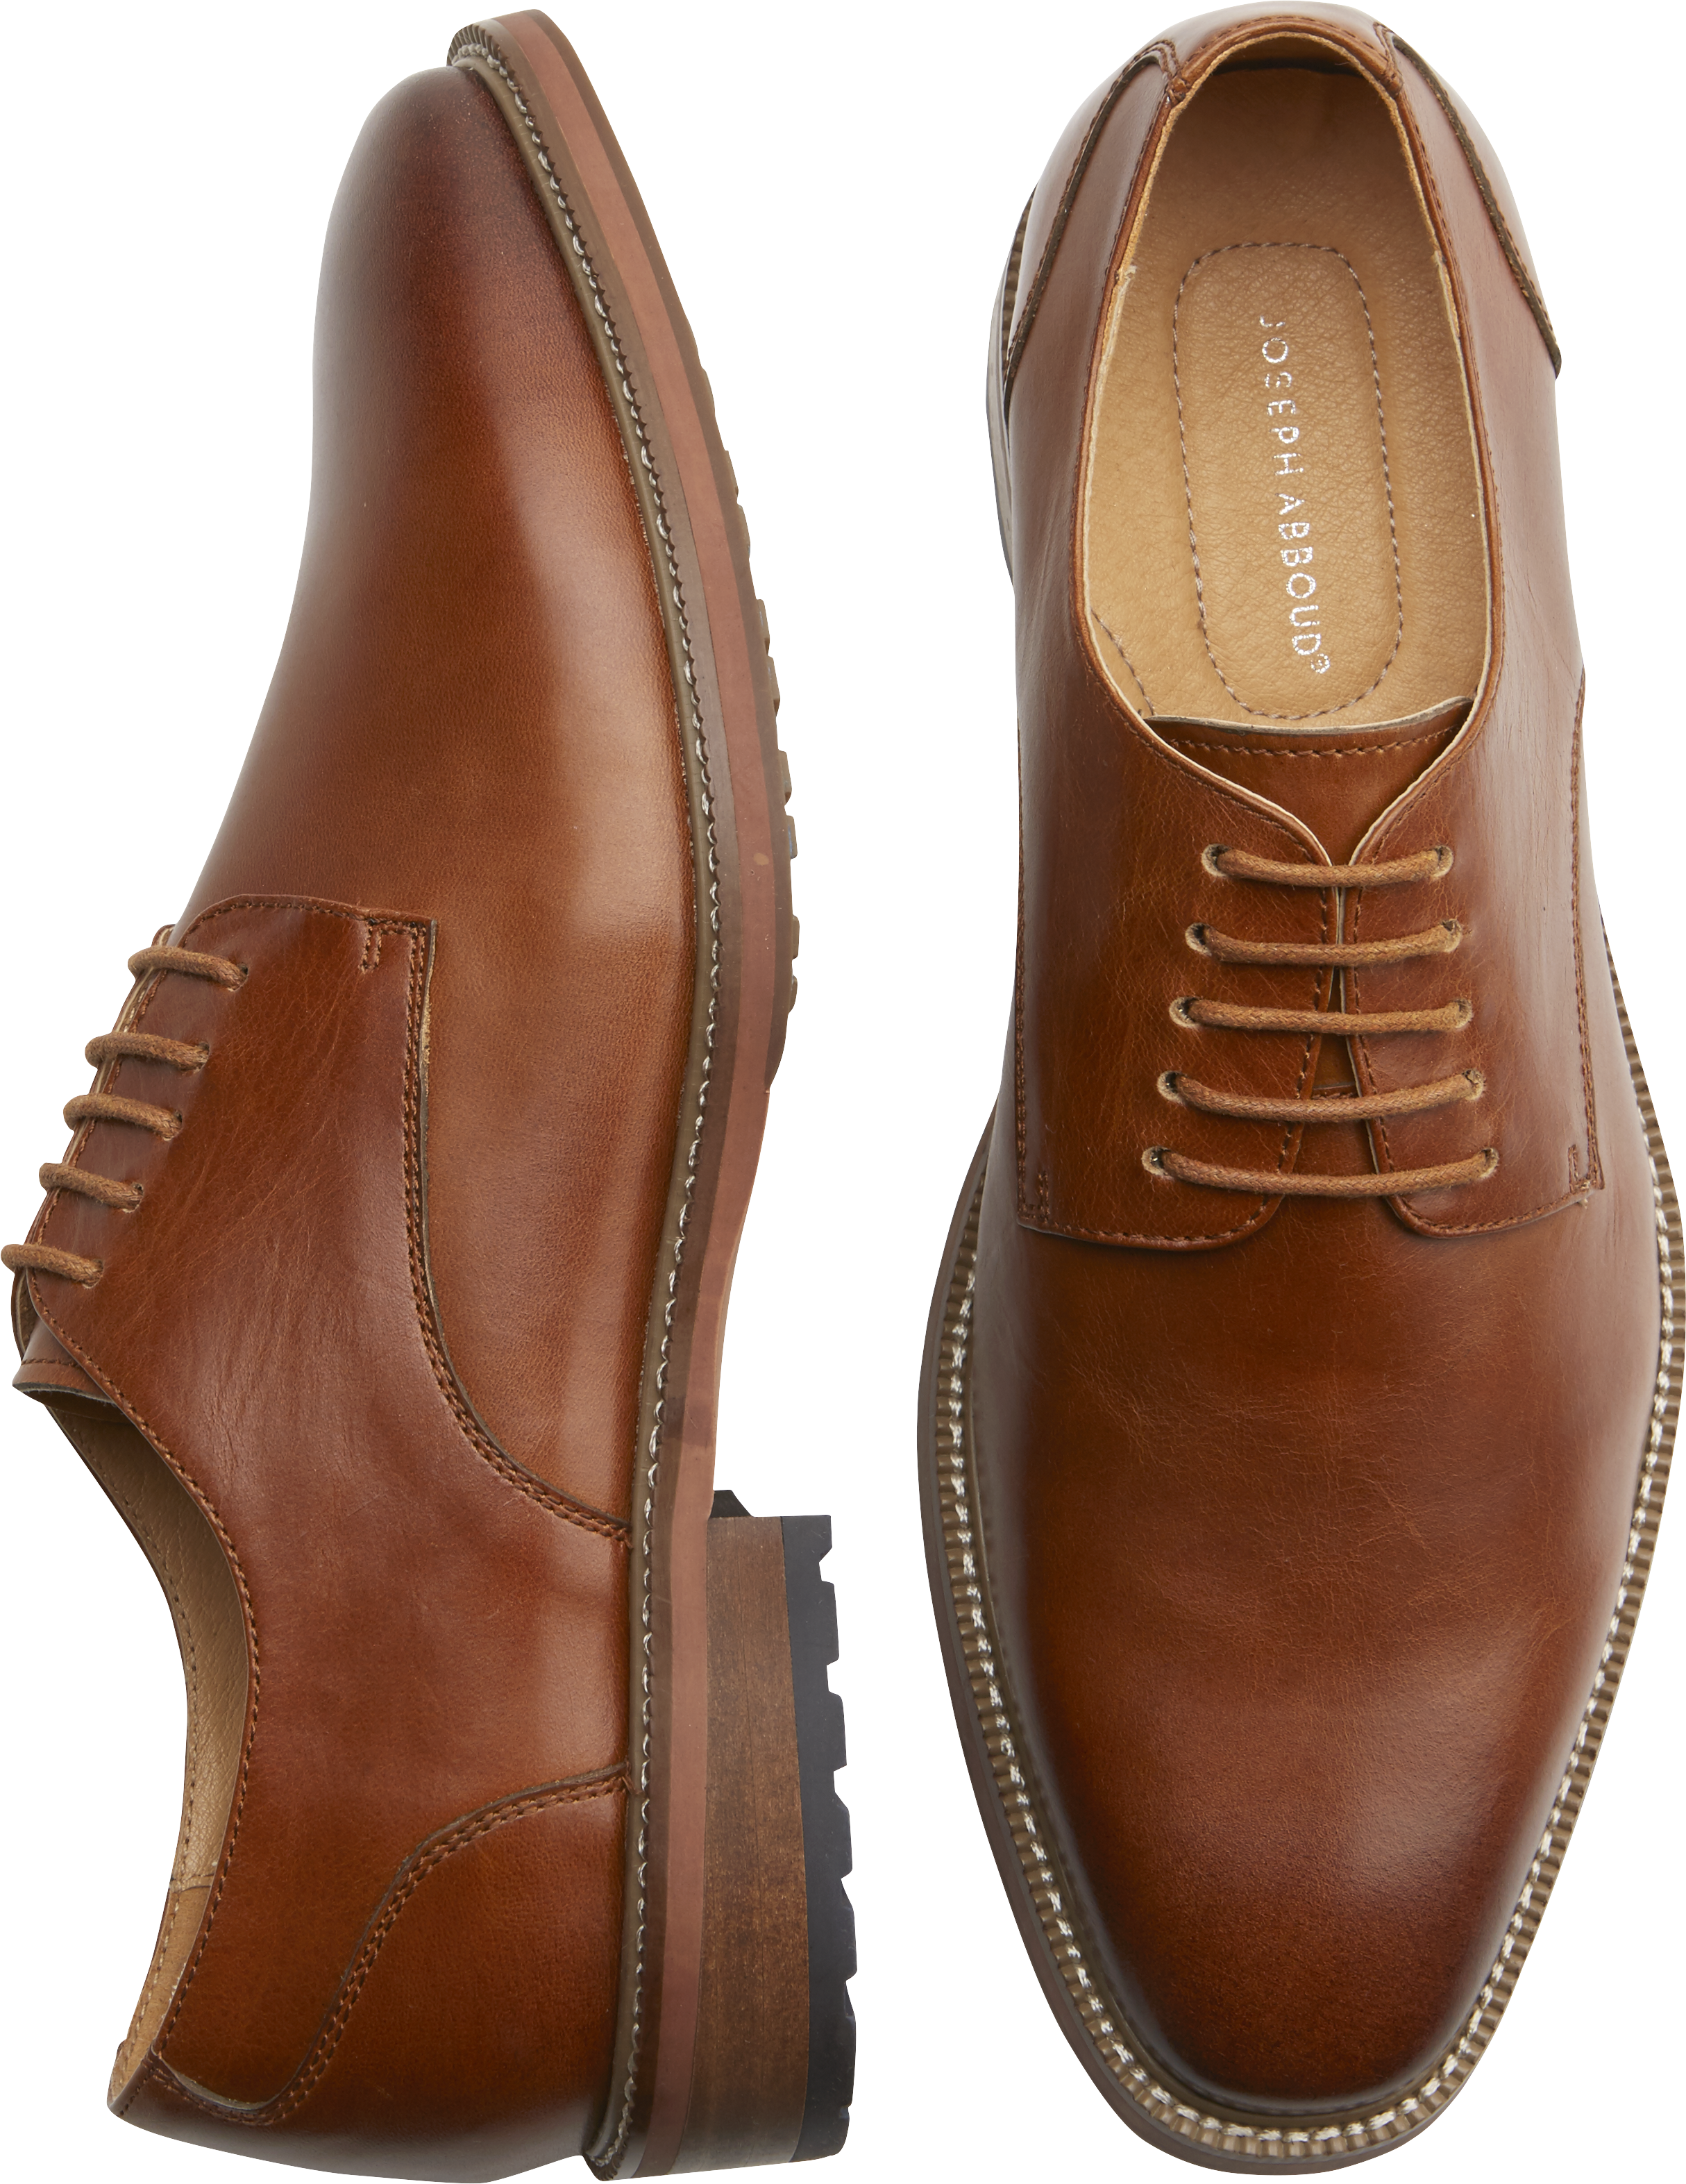 Joseph Abboud Tan Plain Toe Oxfords - Men's Casual Shoes | Men's Wearhouse